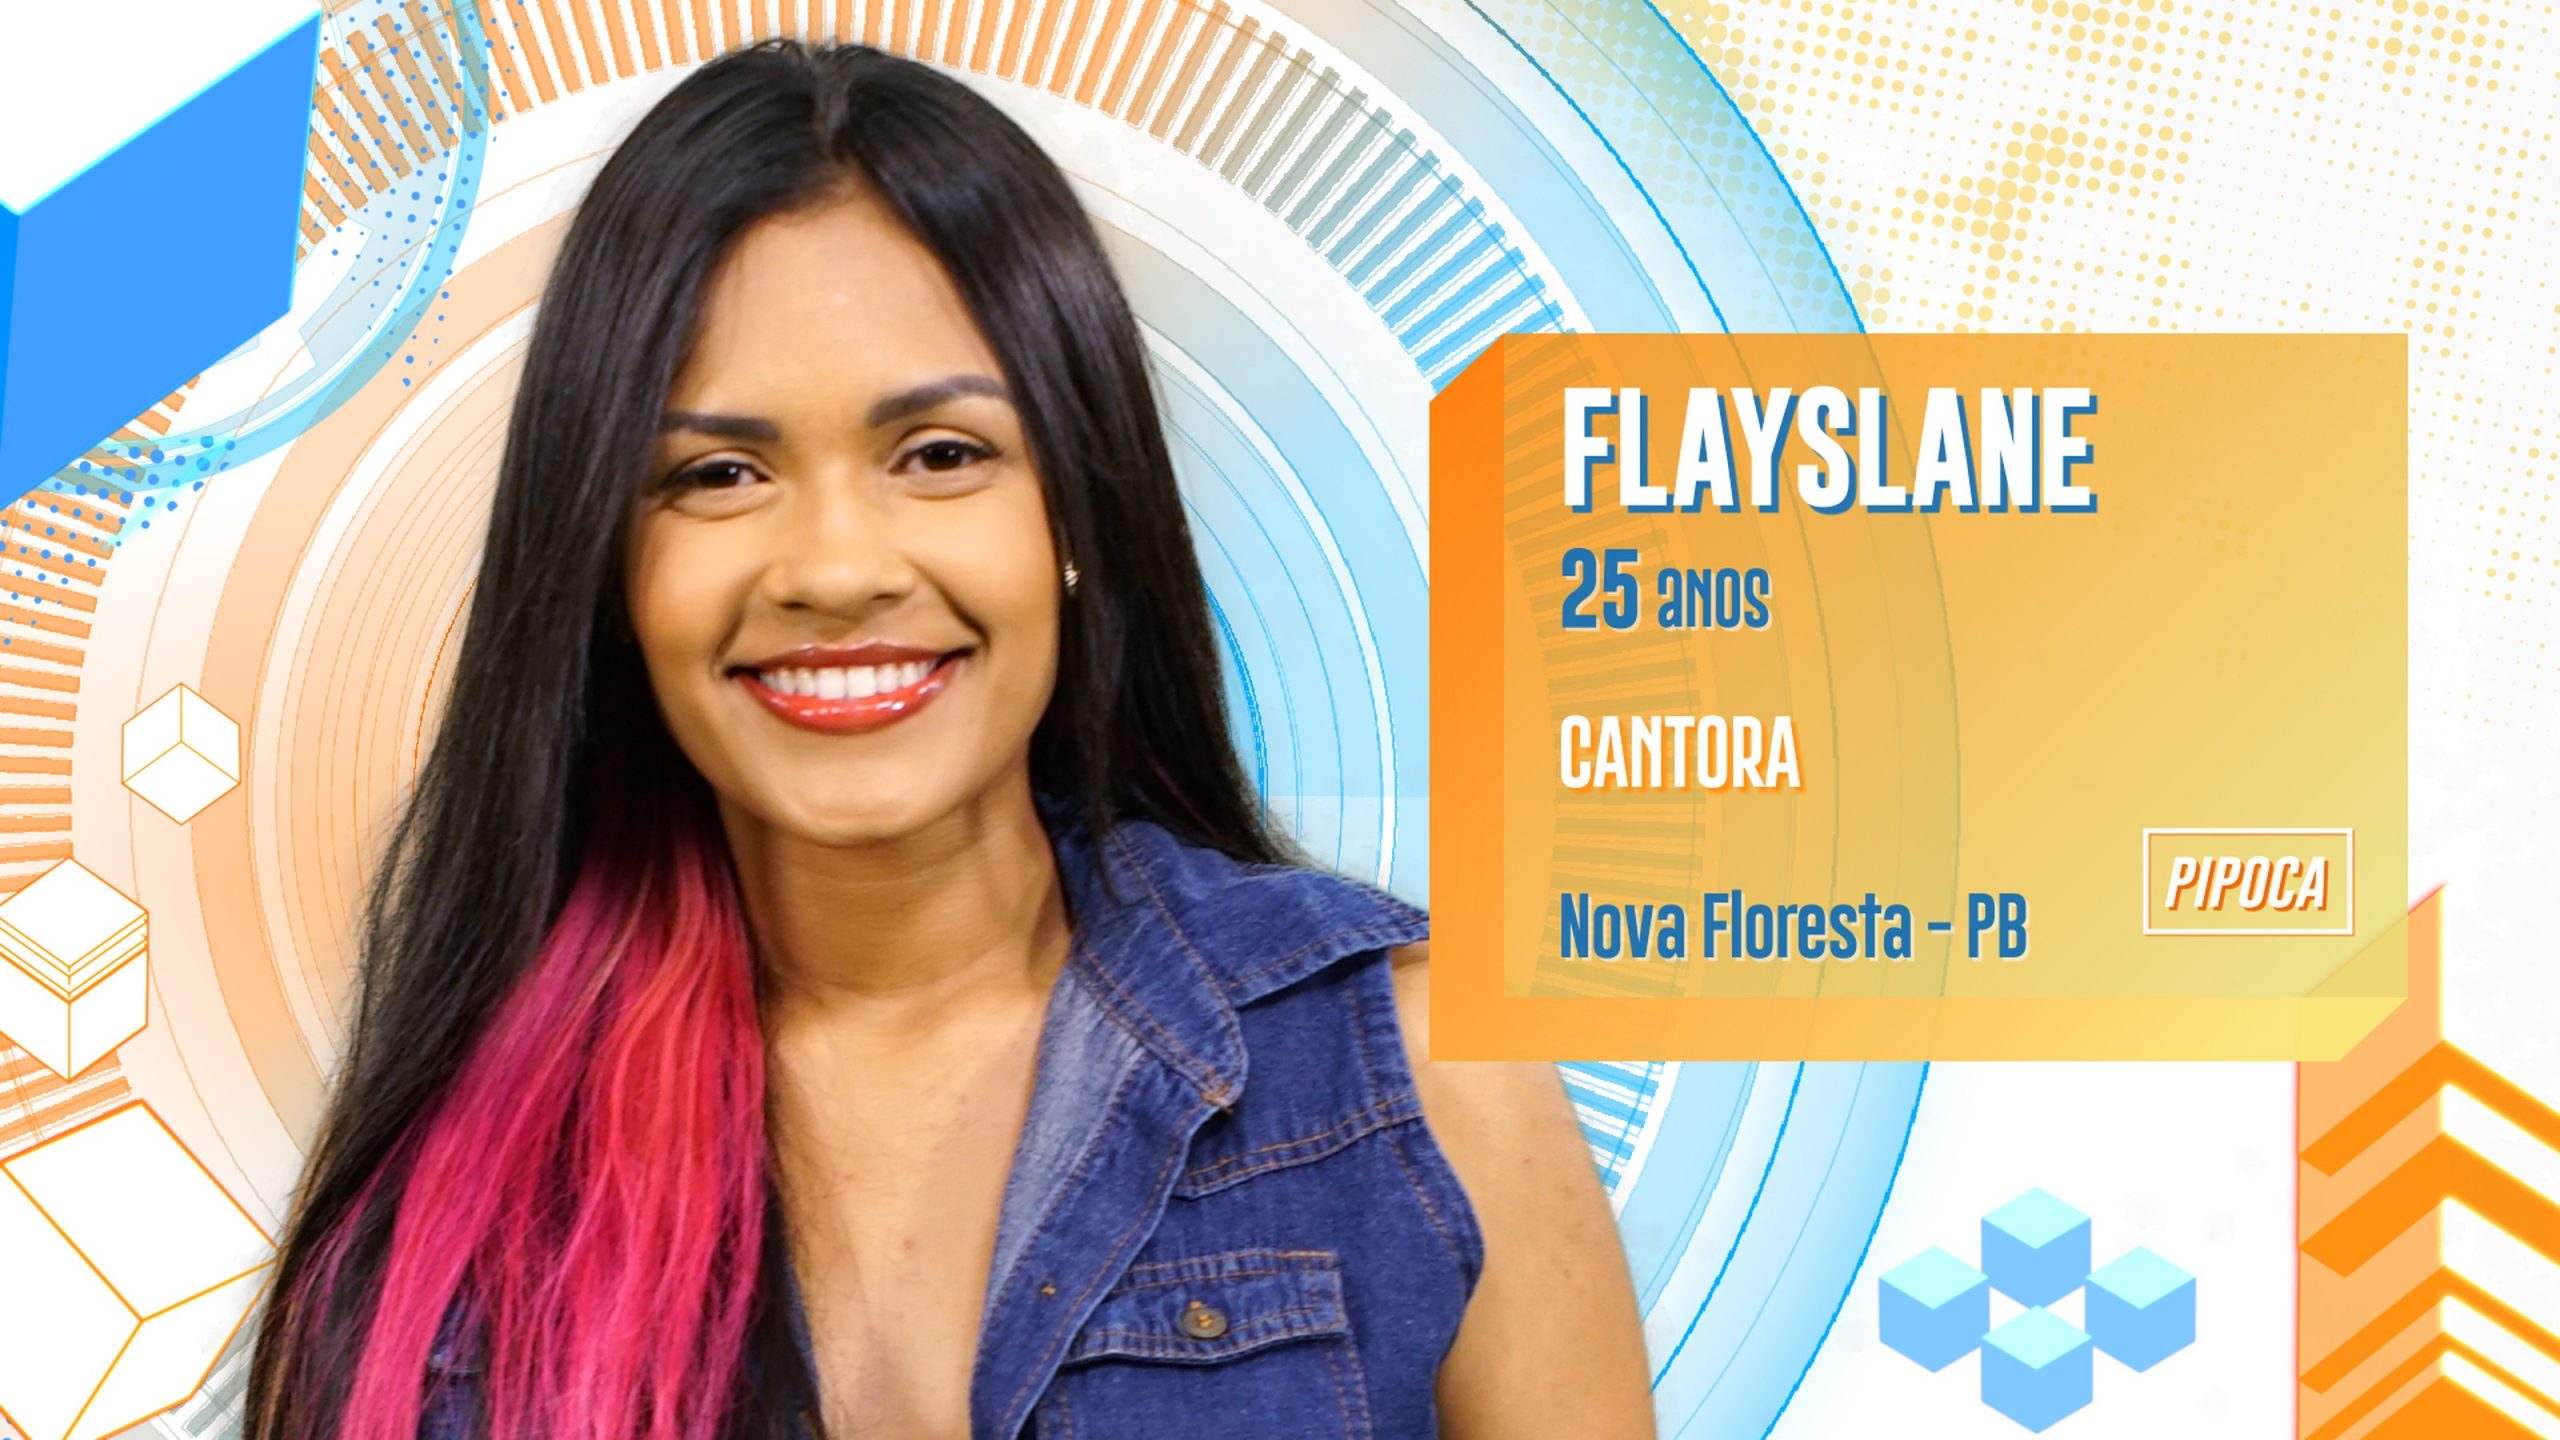 BBB 2020: Flayslane é cantora e diz que leva seus inimigos ao limite